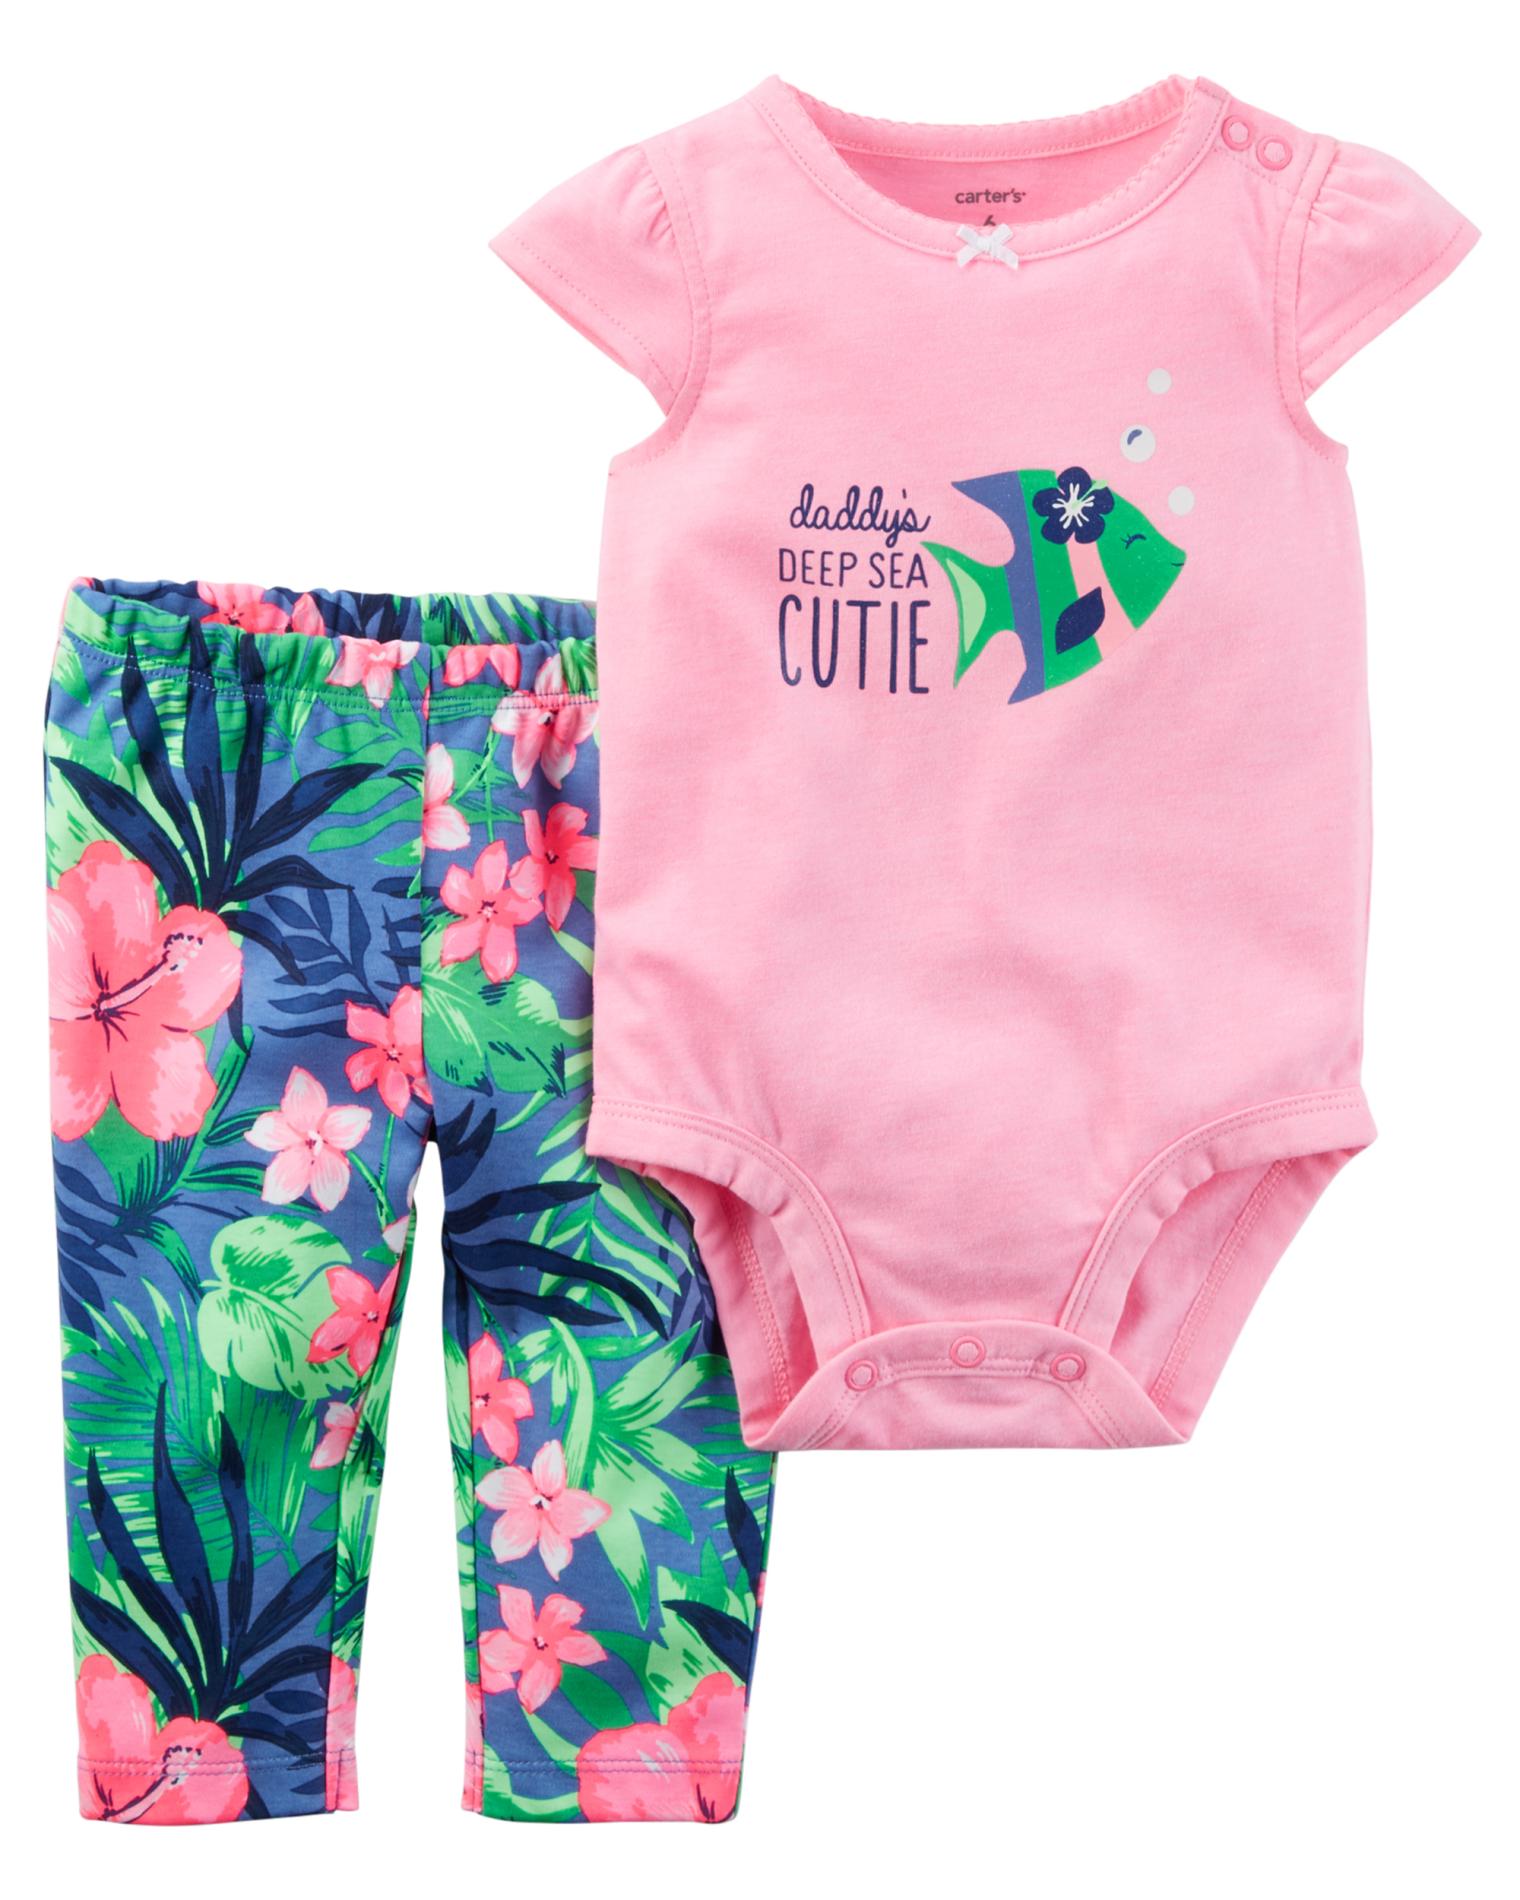 Carter's Newborn & Infant Girls' Bodysuit & Leggings - Tropical